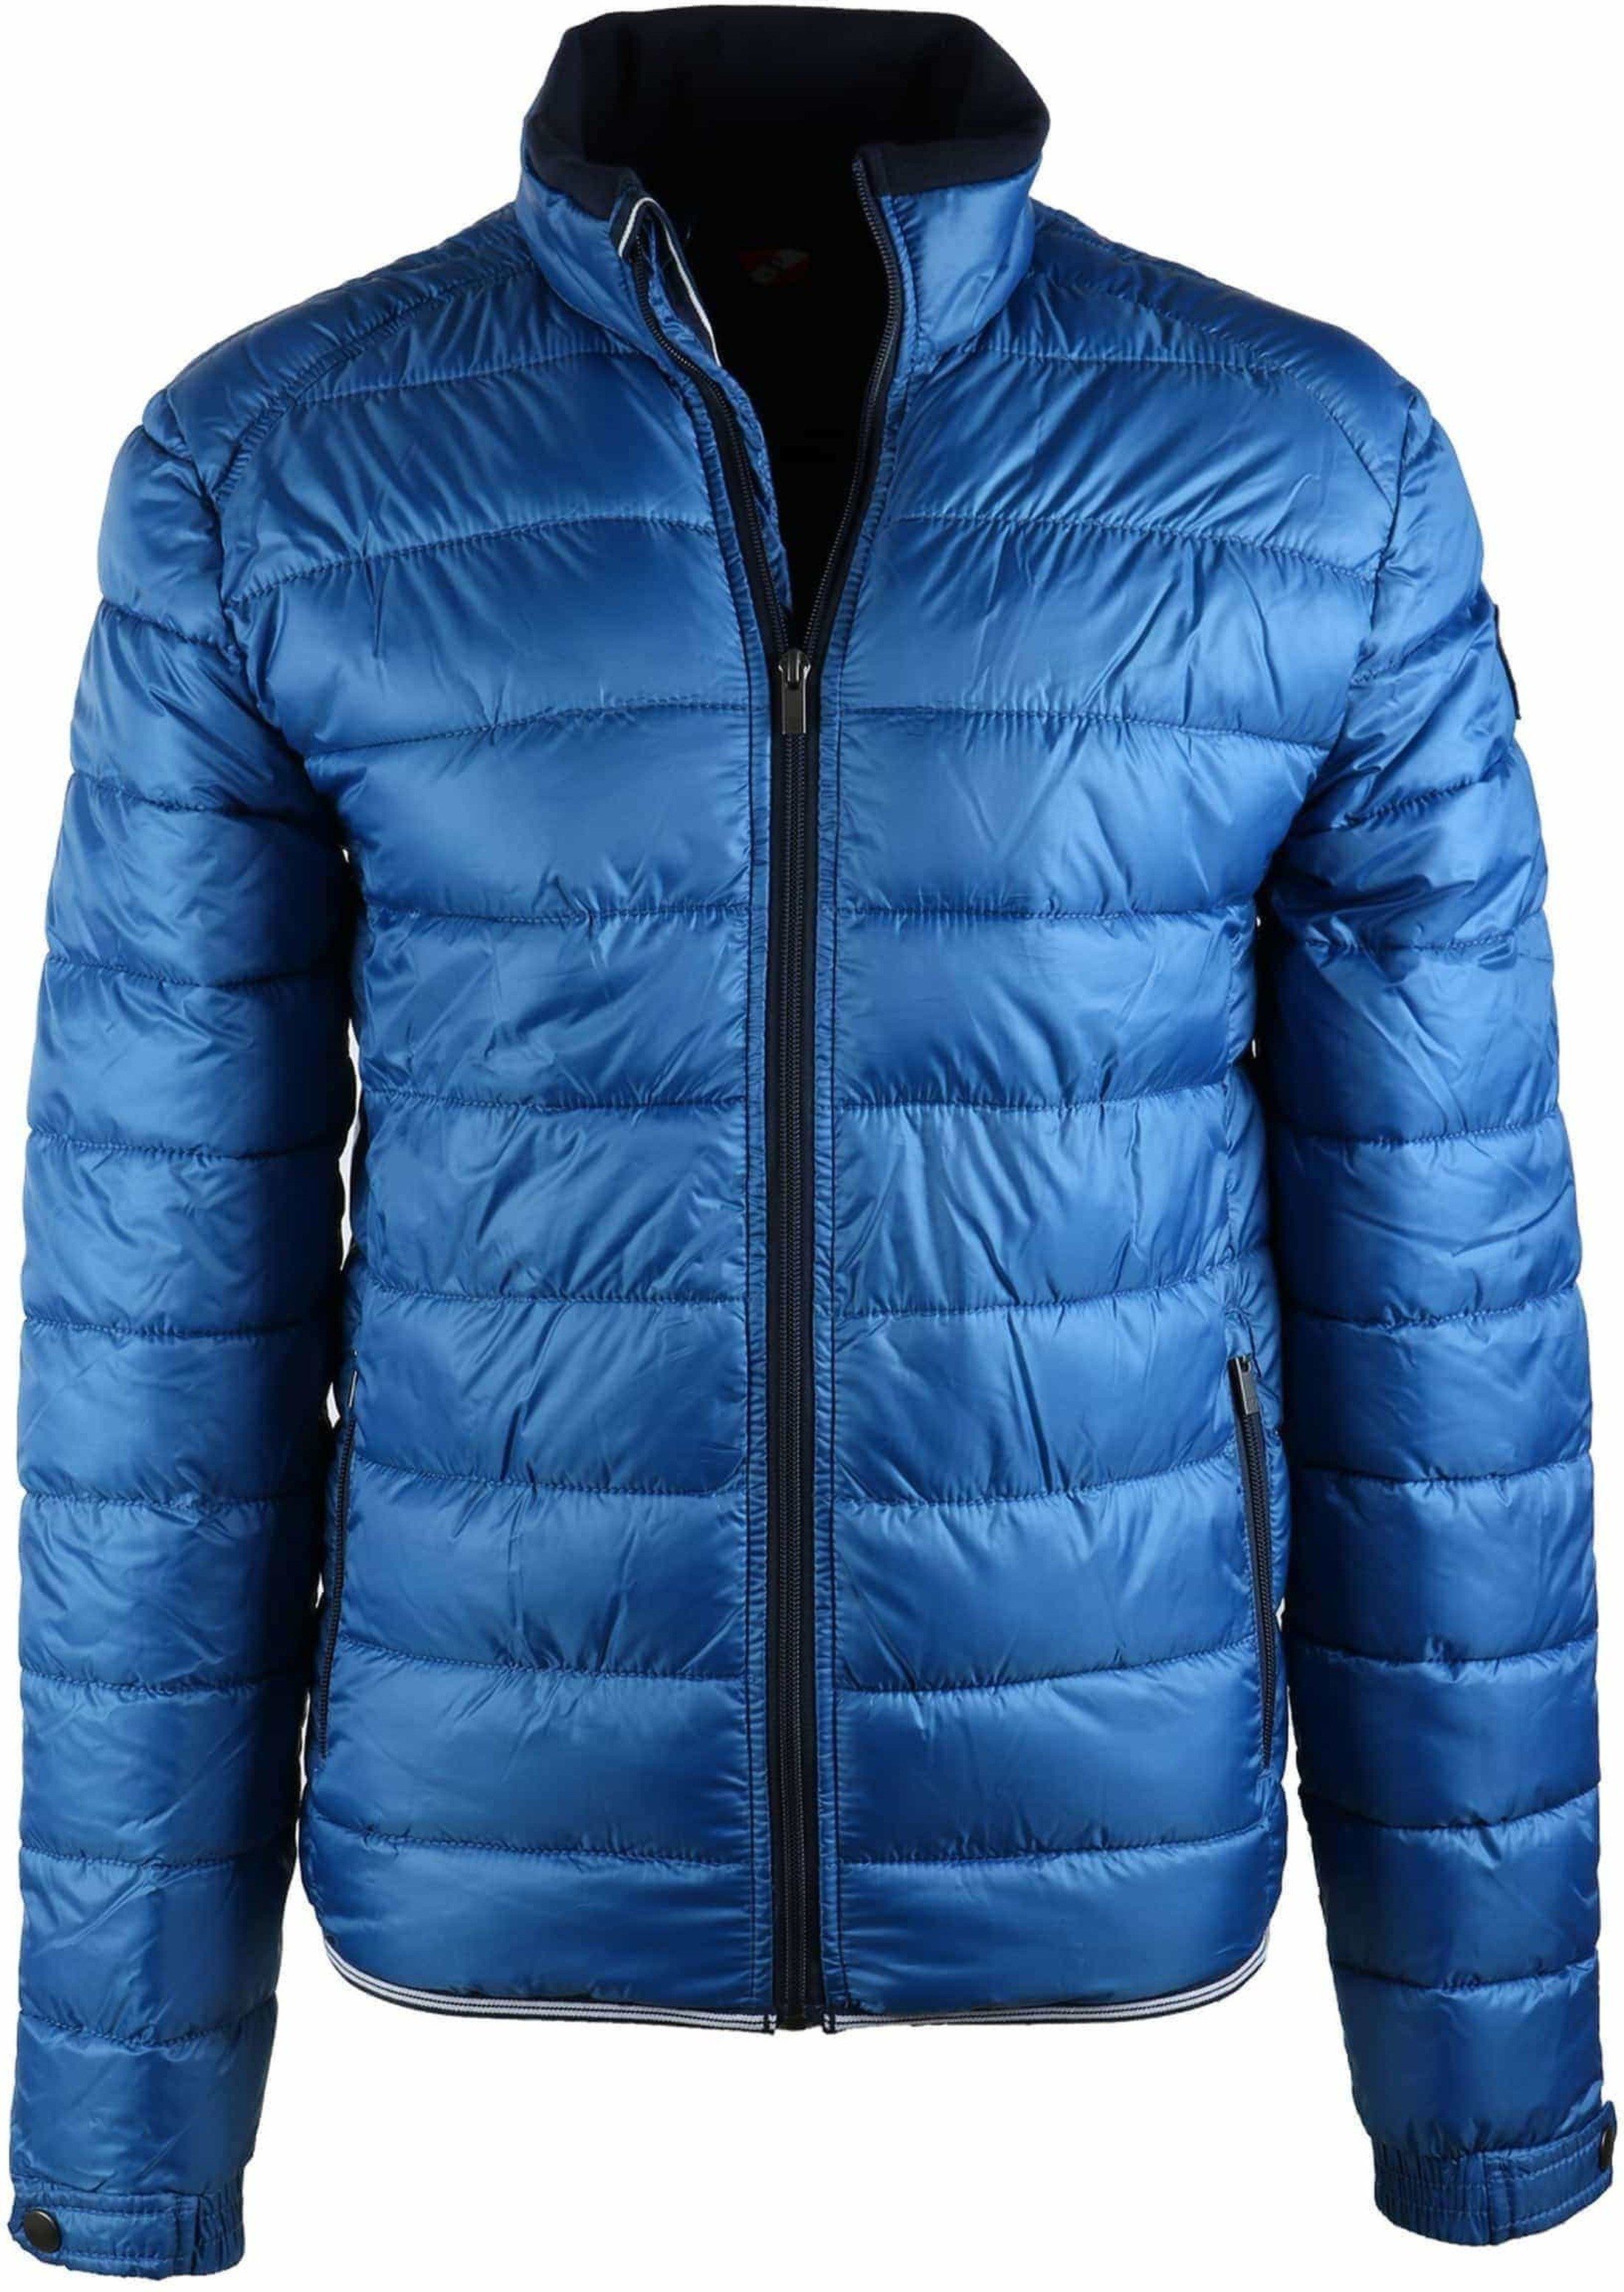 Suitable Jacket Mulsanne Blue size M